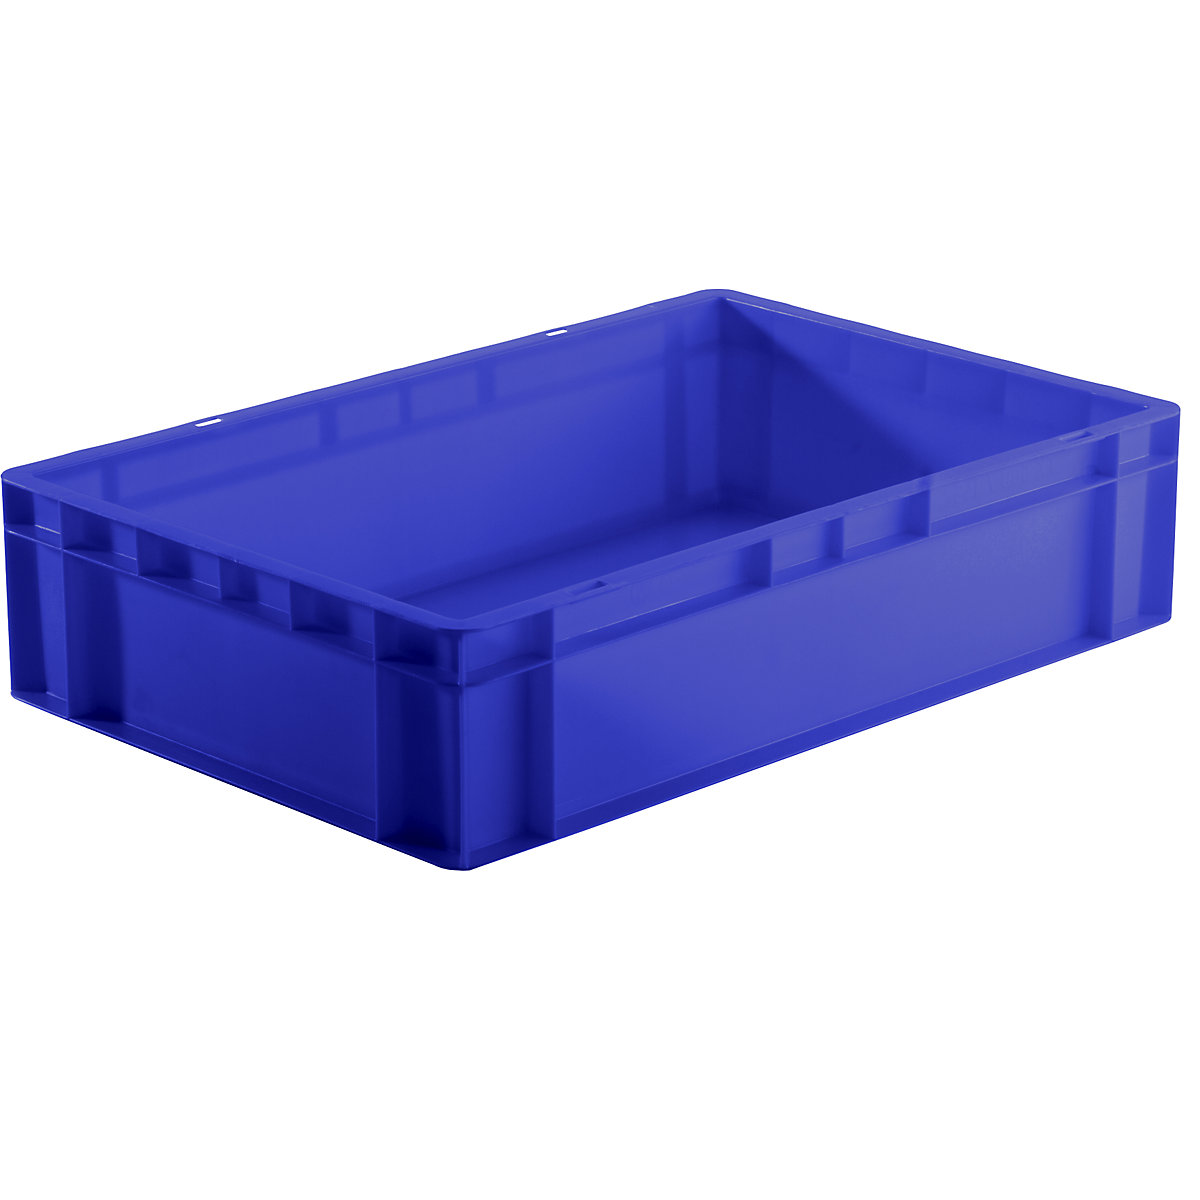 Euro-Format-Stapelbehälter, Wände und Boden geschlossen, LxBxH 600 x 400 x 145 mm, blau, VE 5 Stk